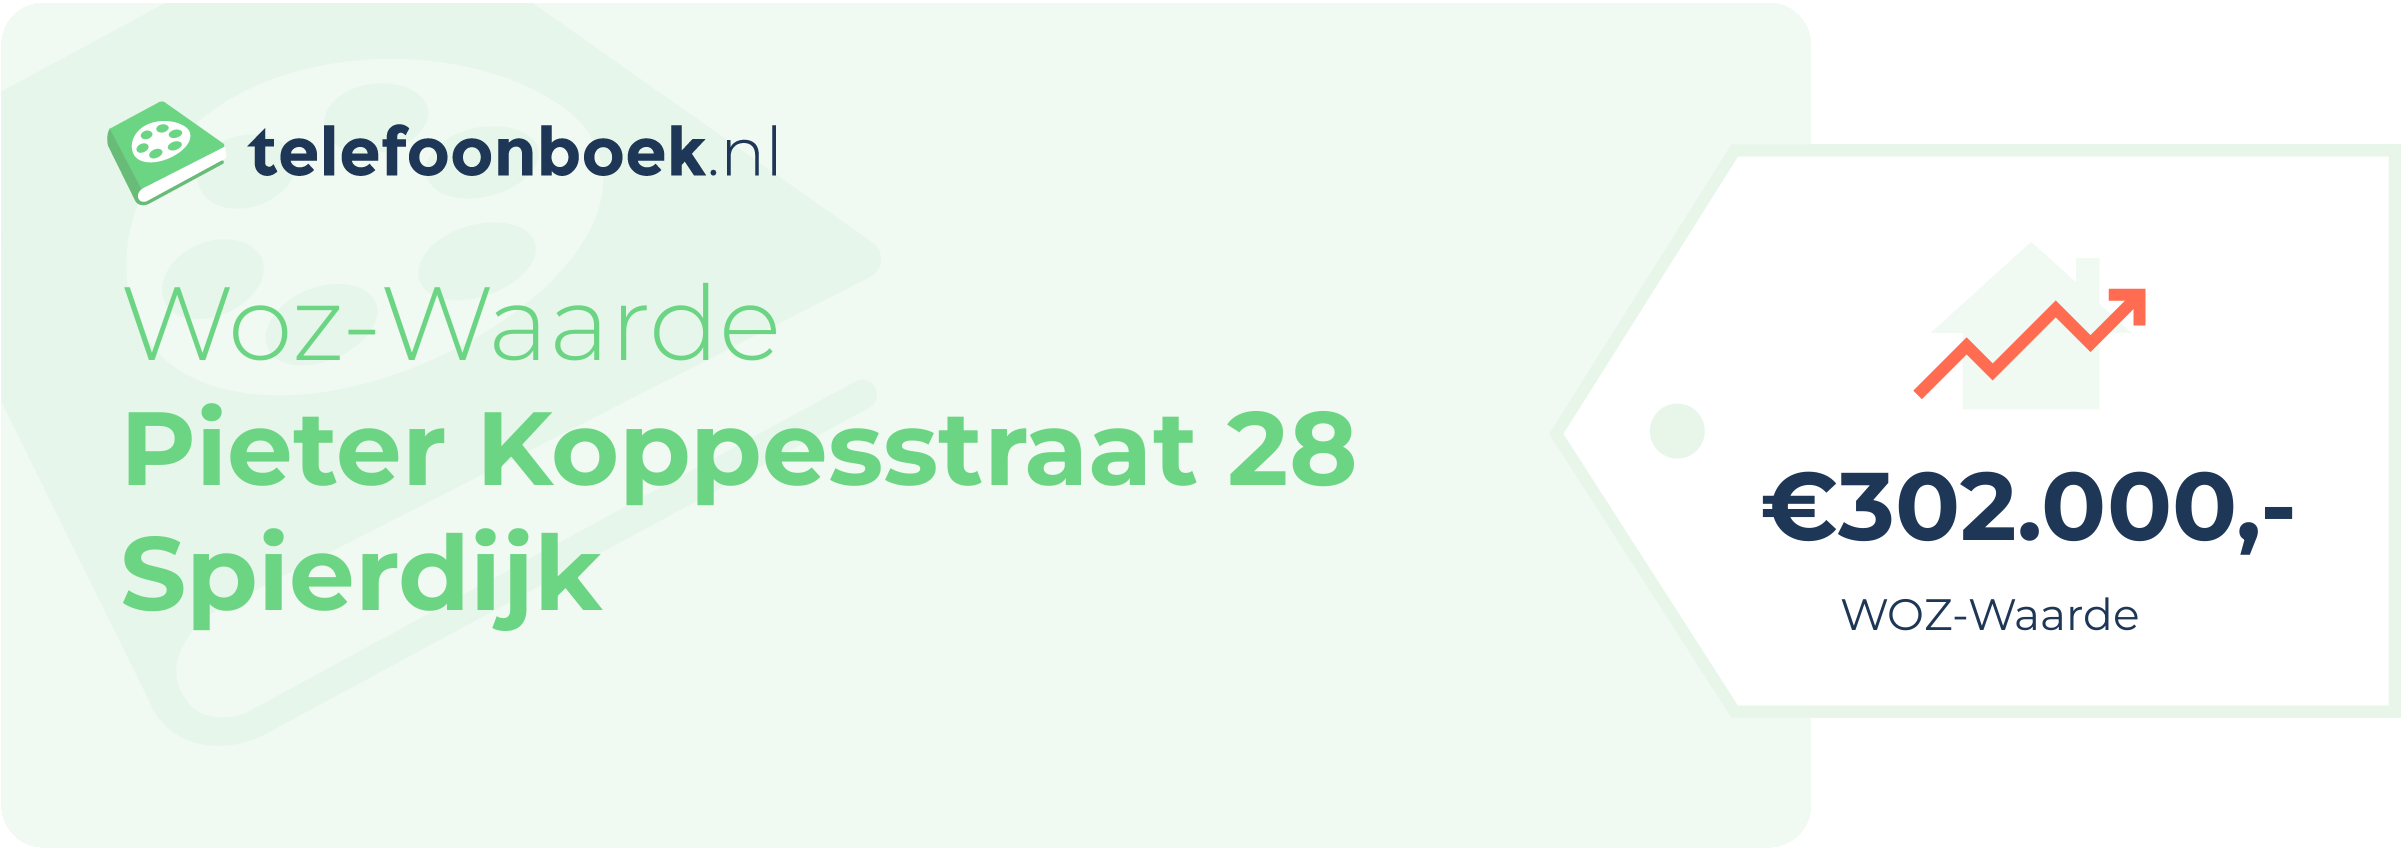 WOZ-waarde Pieter Koppesstraat 28 Spierdijk